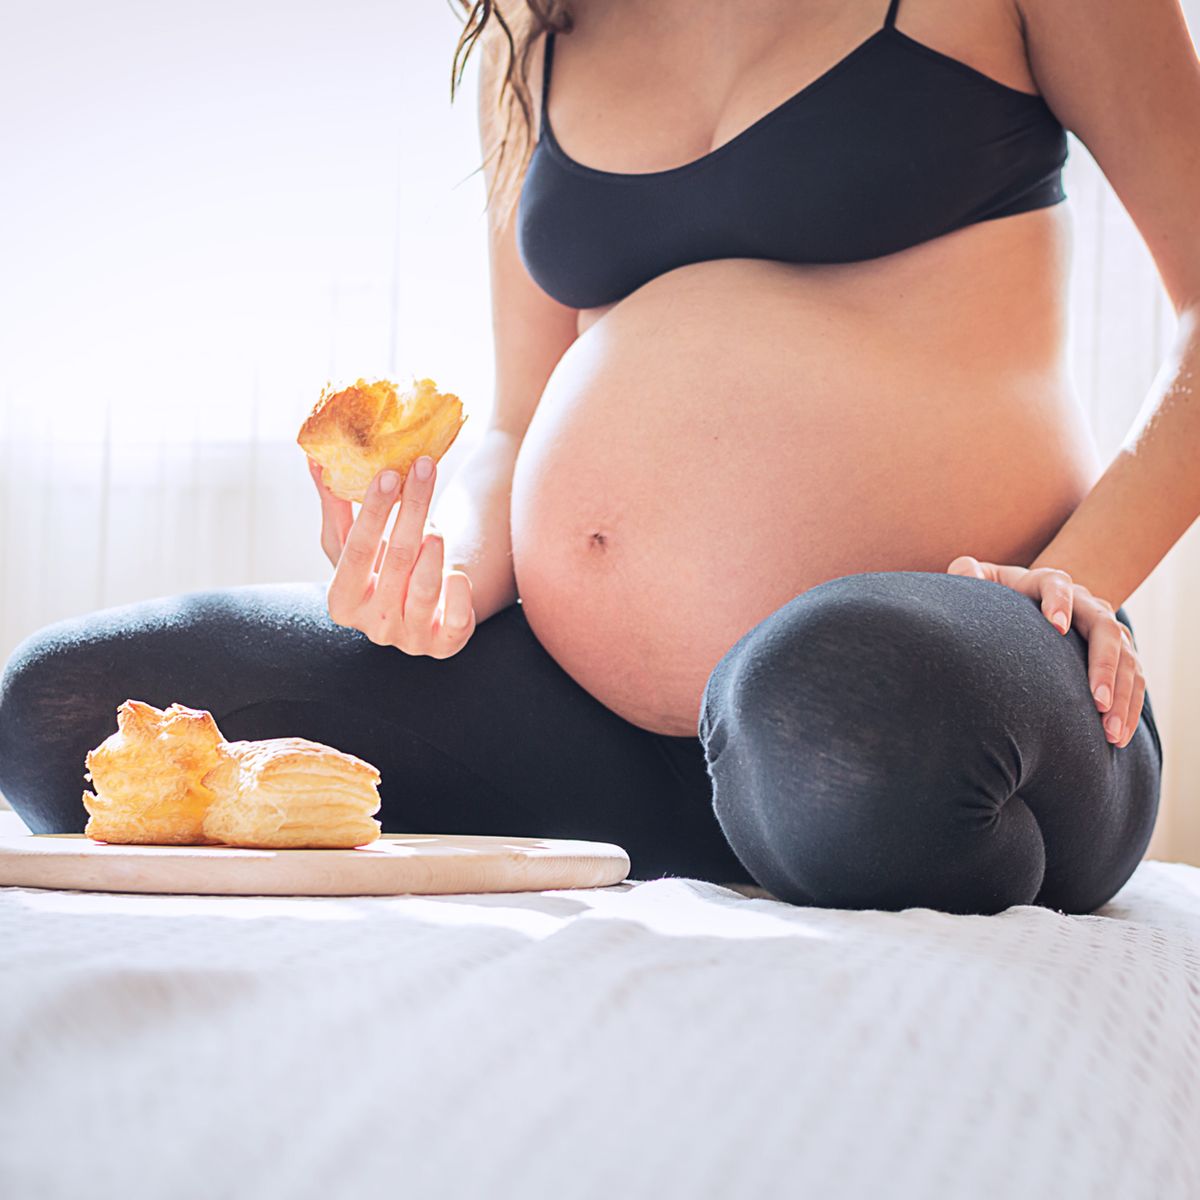 32 неделя беременности что происходит с мамой. 30 Недель беременности фото. Питание для беременных на 30 недели.